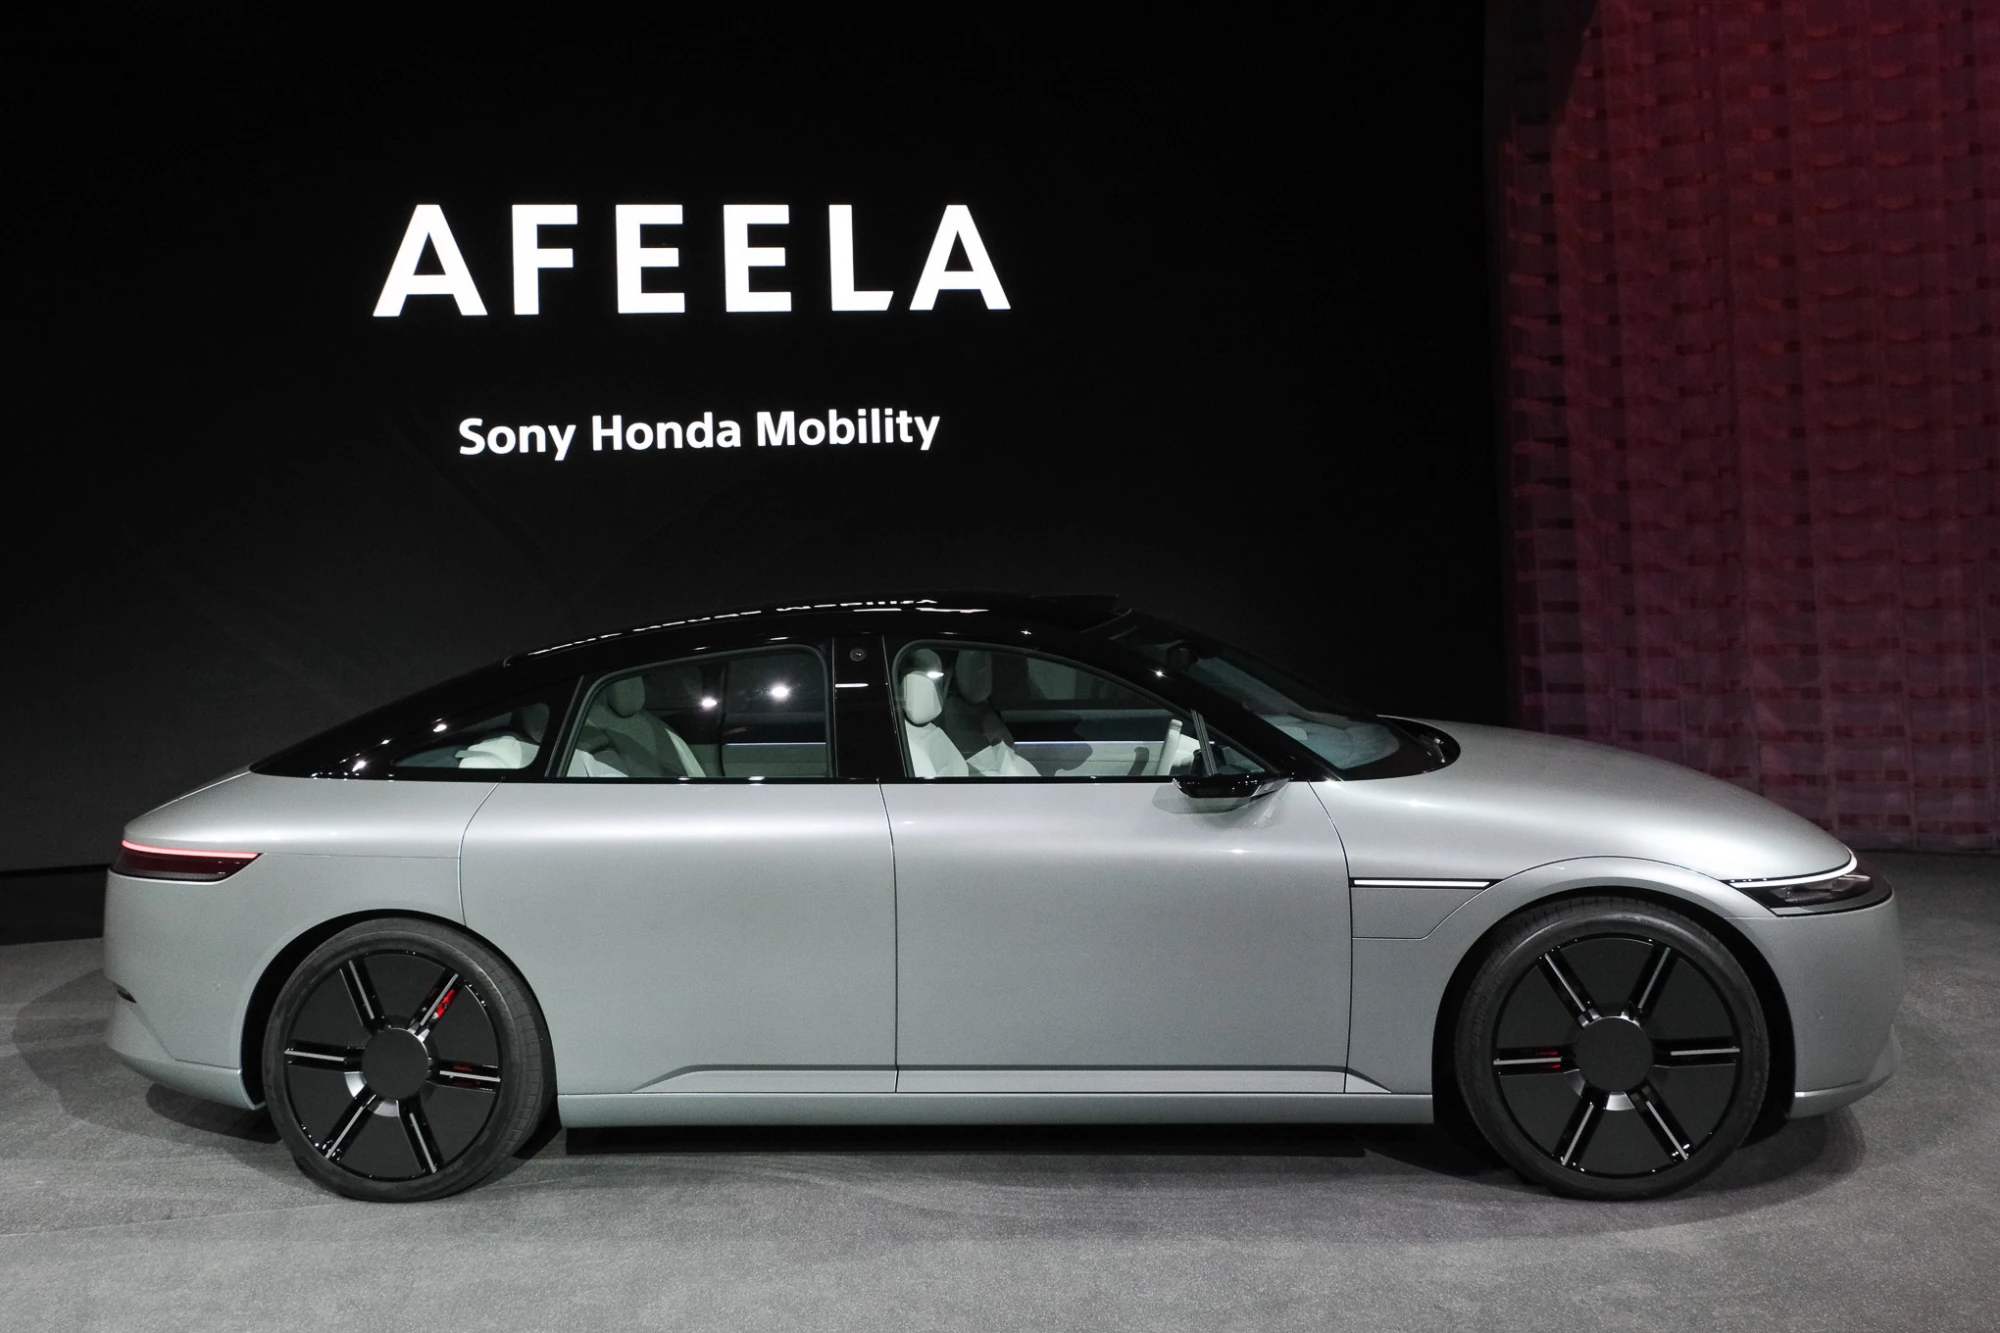 Sony zeigte einen Prototyp des Afeela-Autos, das im Jahr 2026 auf den Markt kommen soll